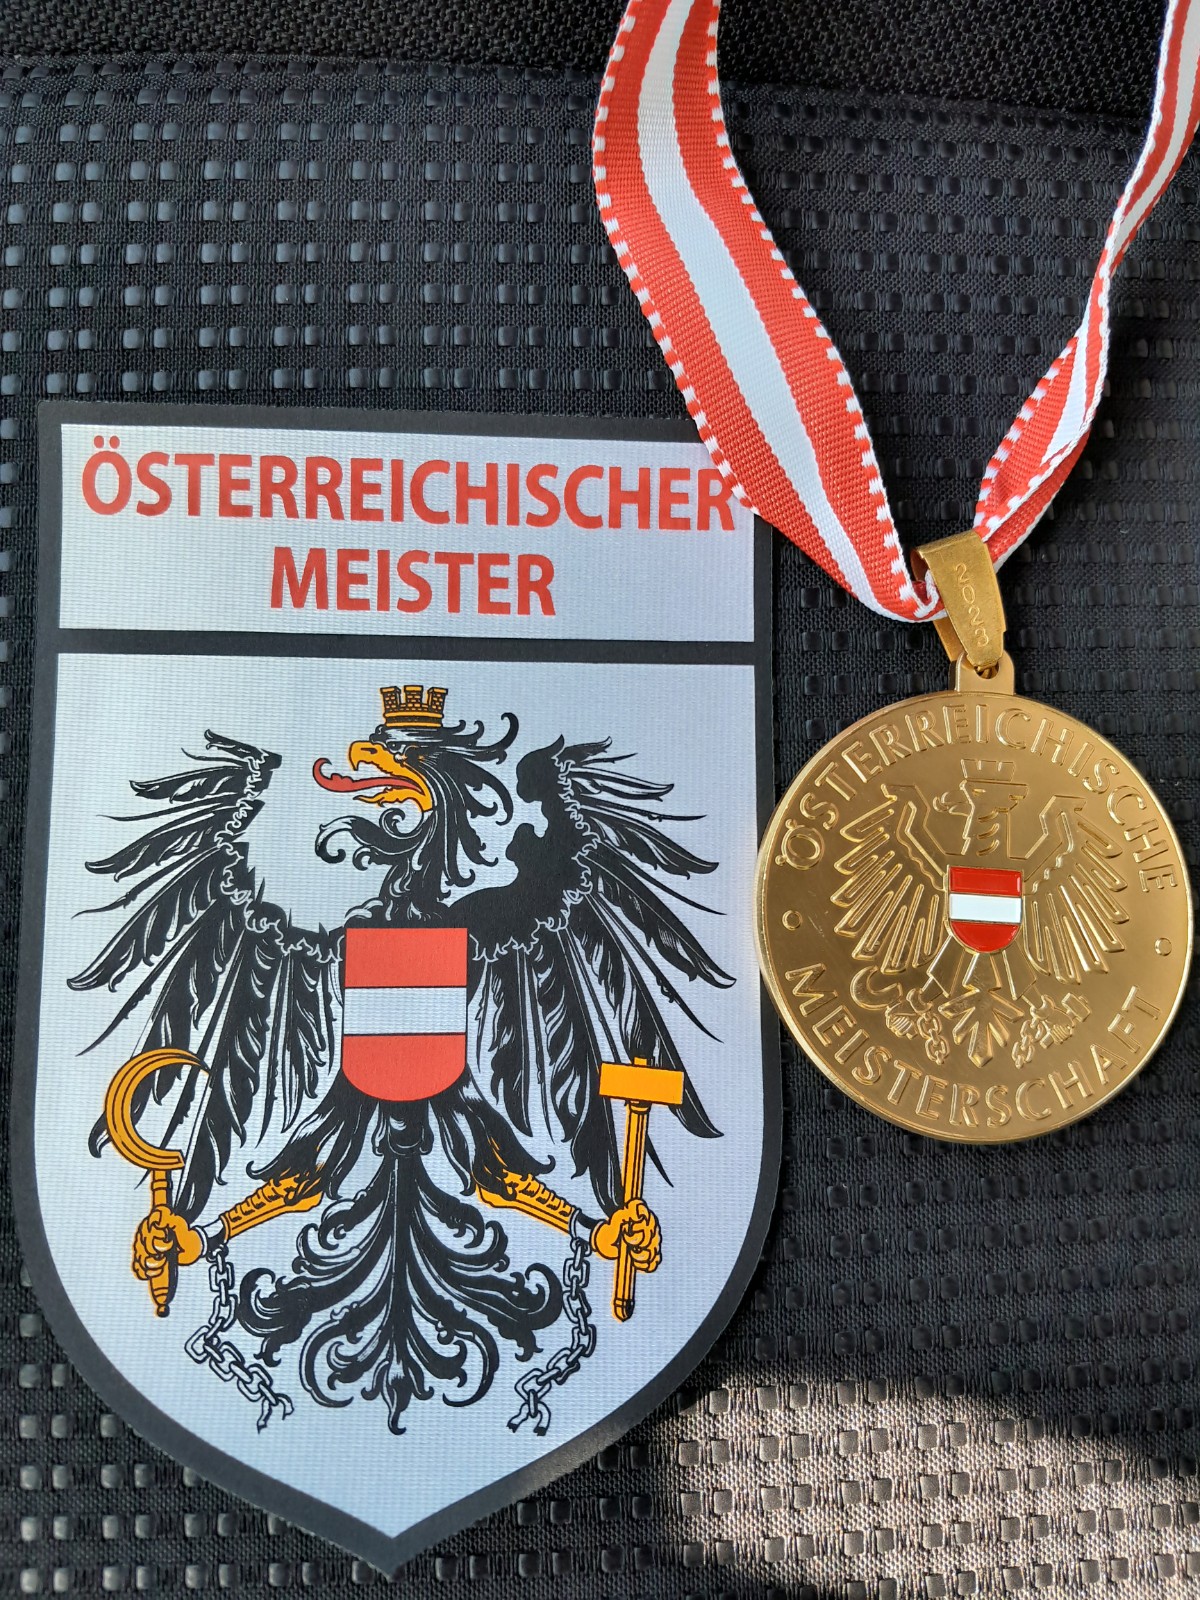 Featured image for “Österreichische Meisterschaften”